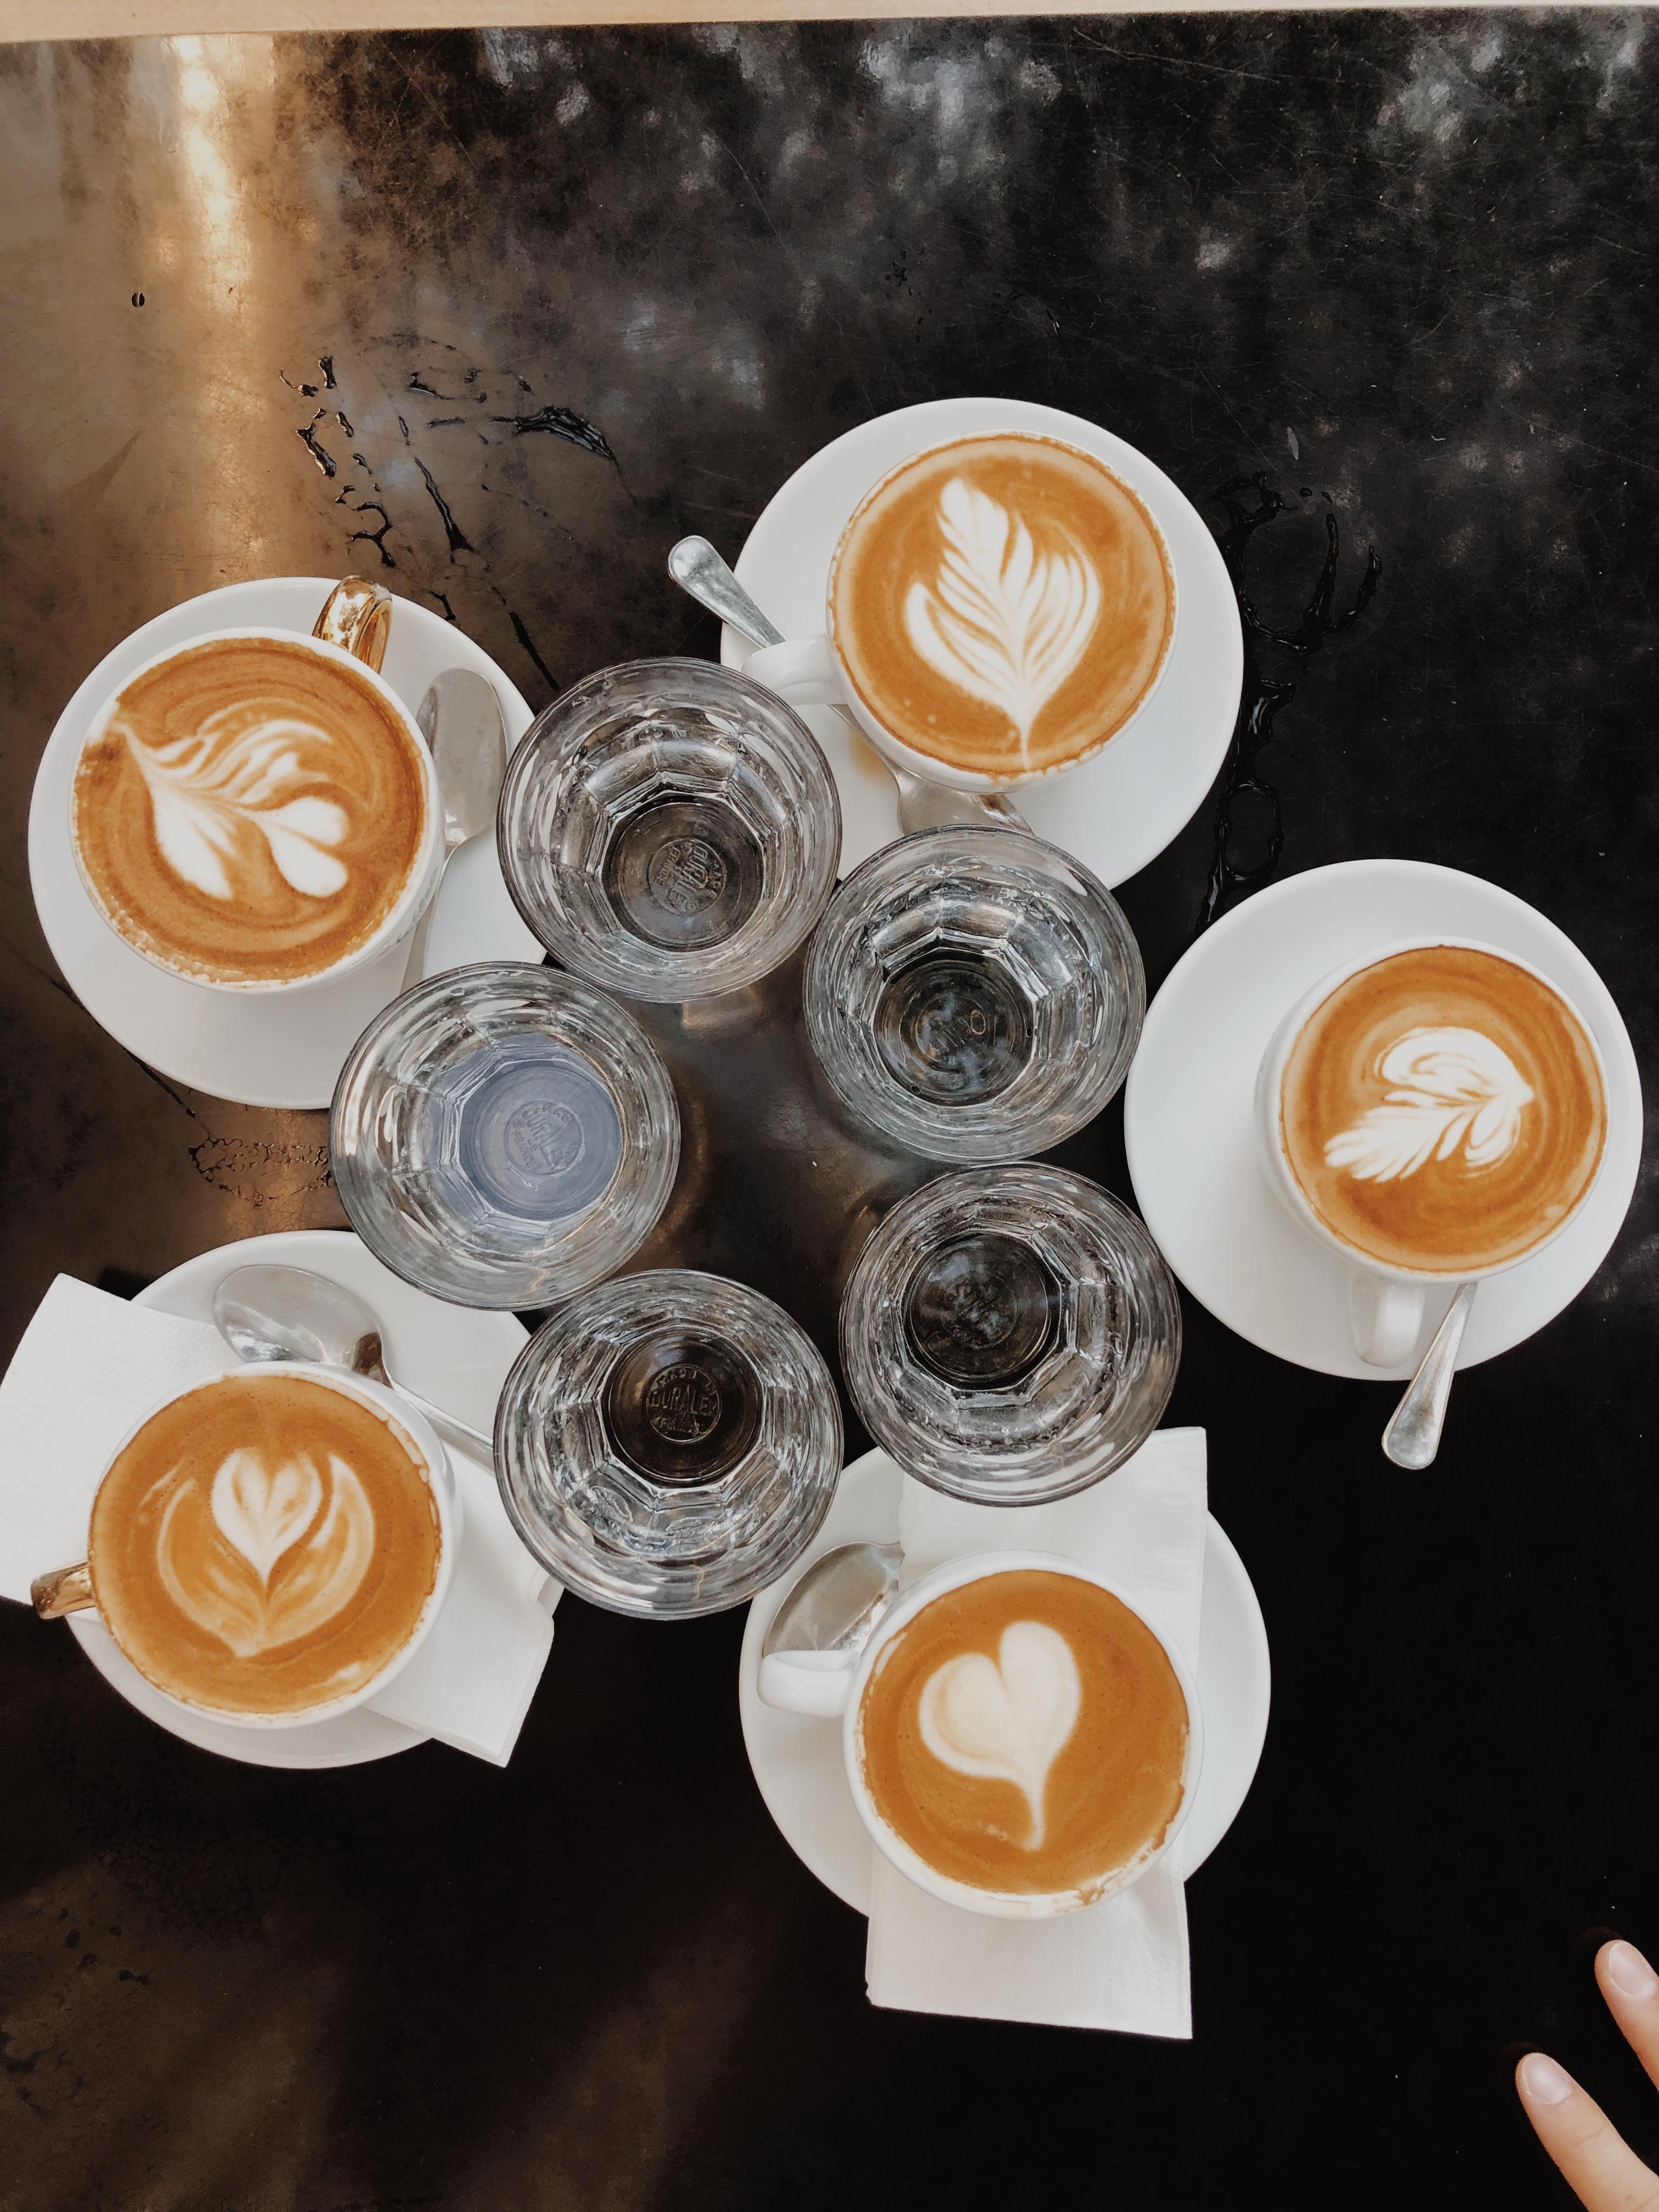 Zeit für herbstliches Kaffeetrinken mit Freunden 🤎 #kaffeetrinken #latteart #cafe #cappuccino #herbstgefühle